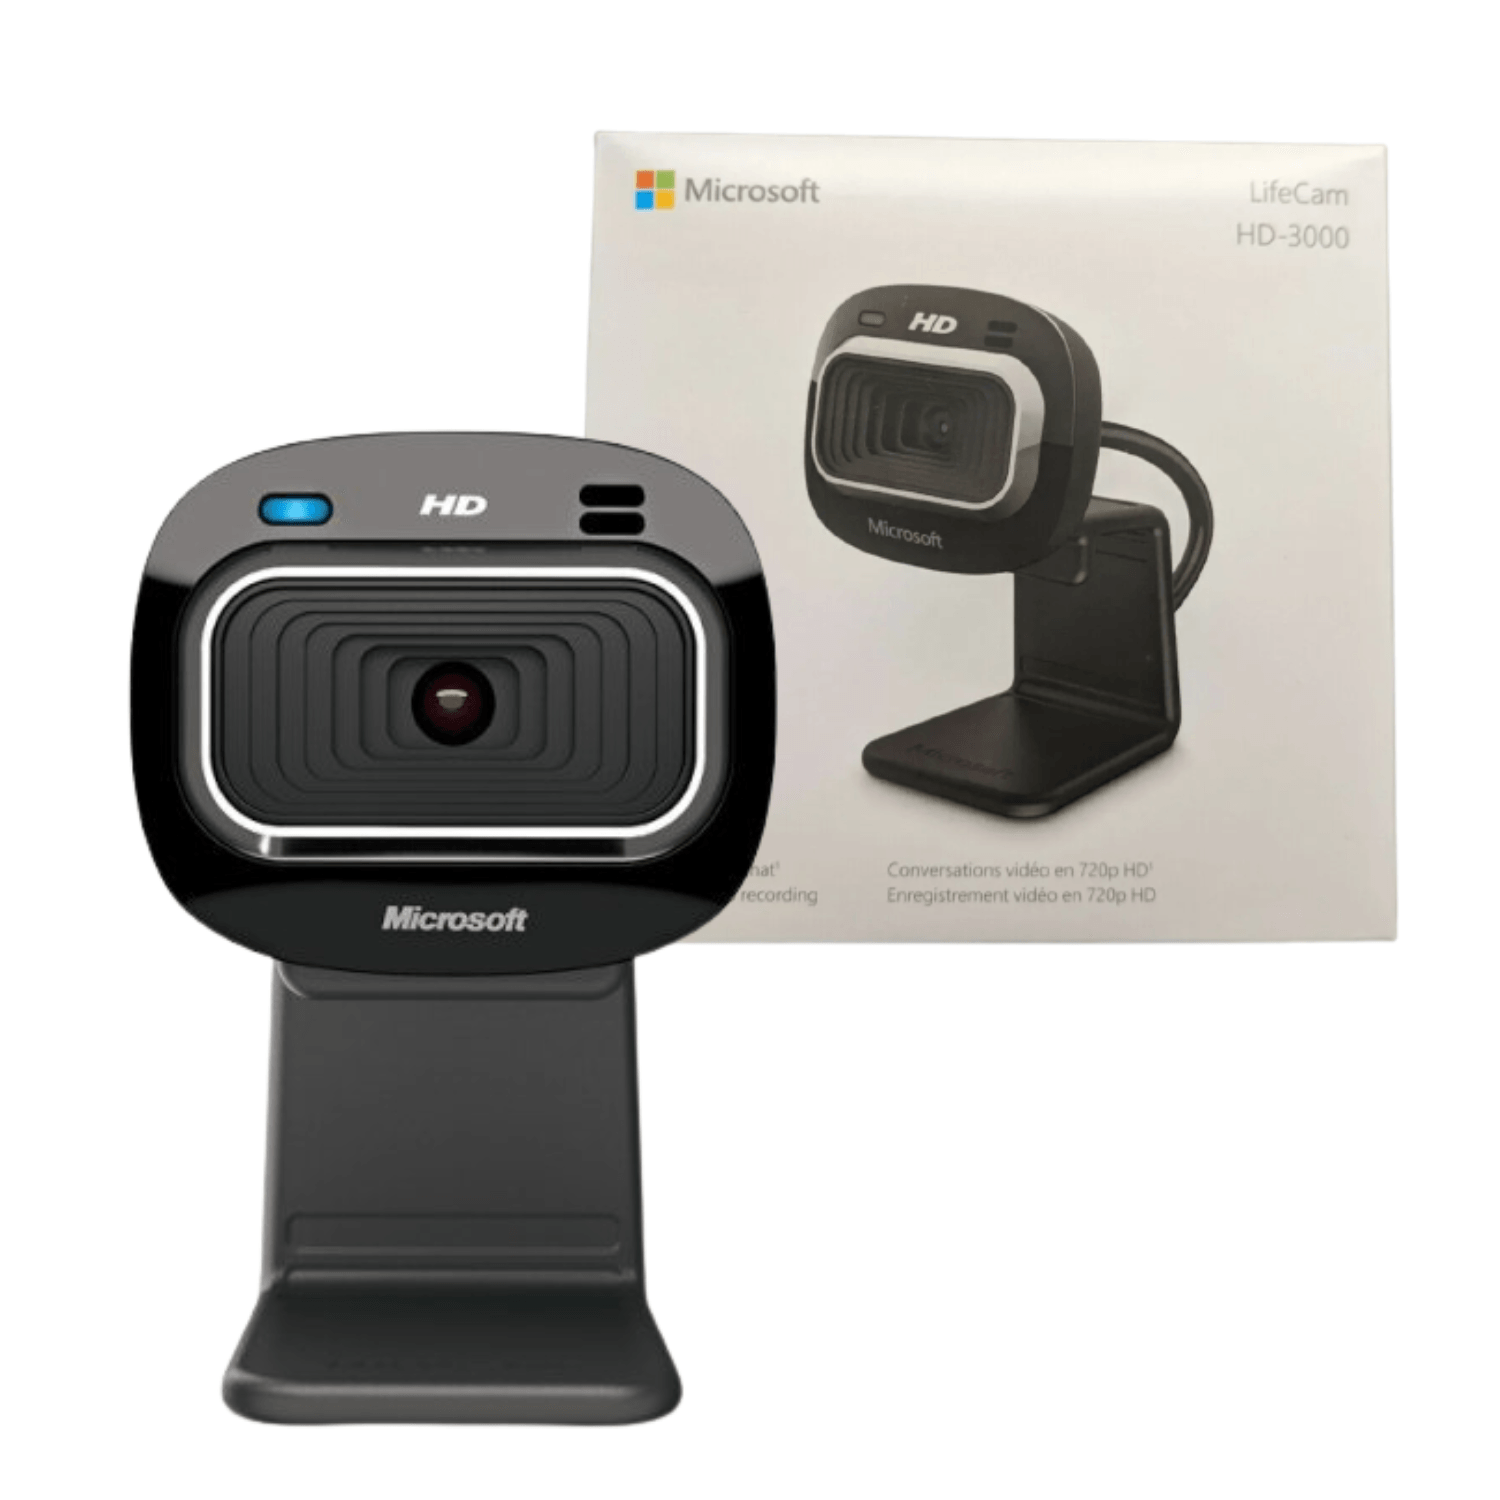 Camara Webcam Microsoft LifeCam Hd-3000 720p Usb